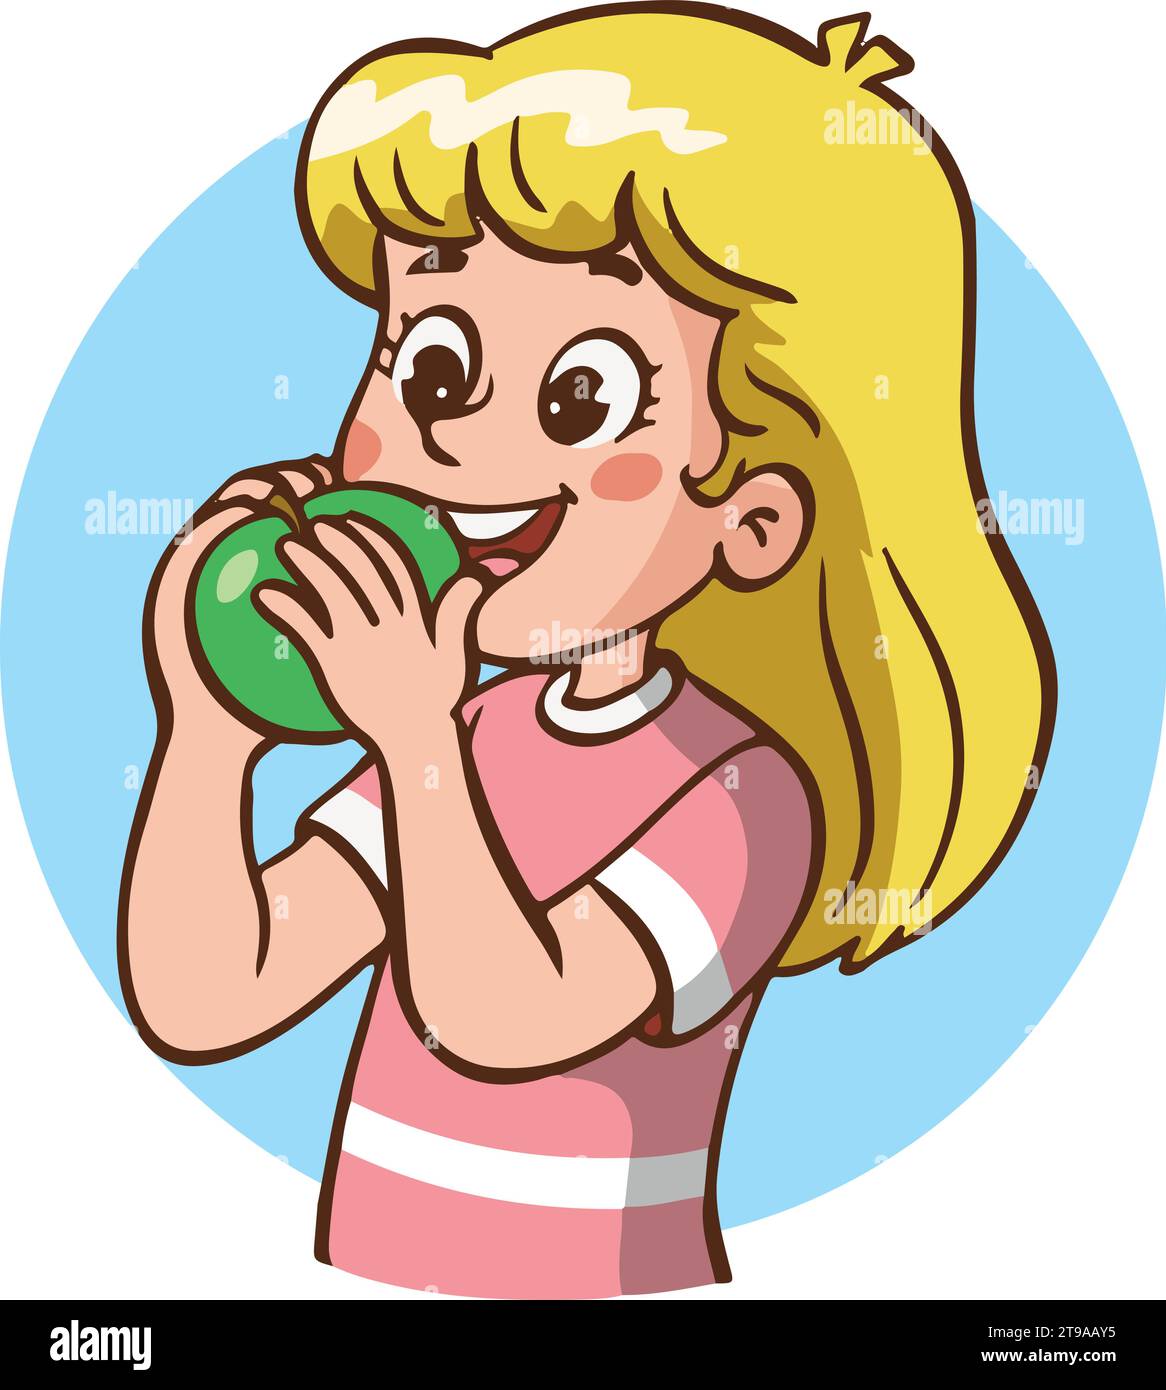 Cartone animato con illustrazione vettoriale di una bambina che mangia mela verde e mostra il pollice in alto. Illustrazione Vettoriale